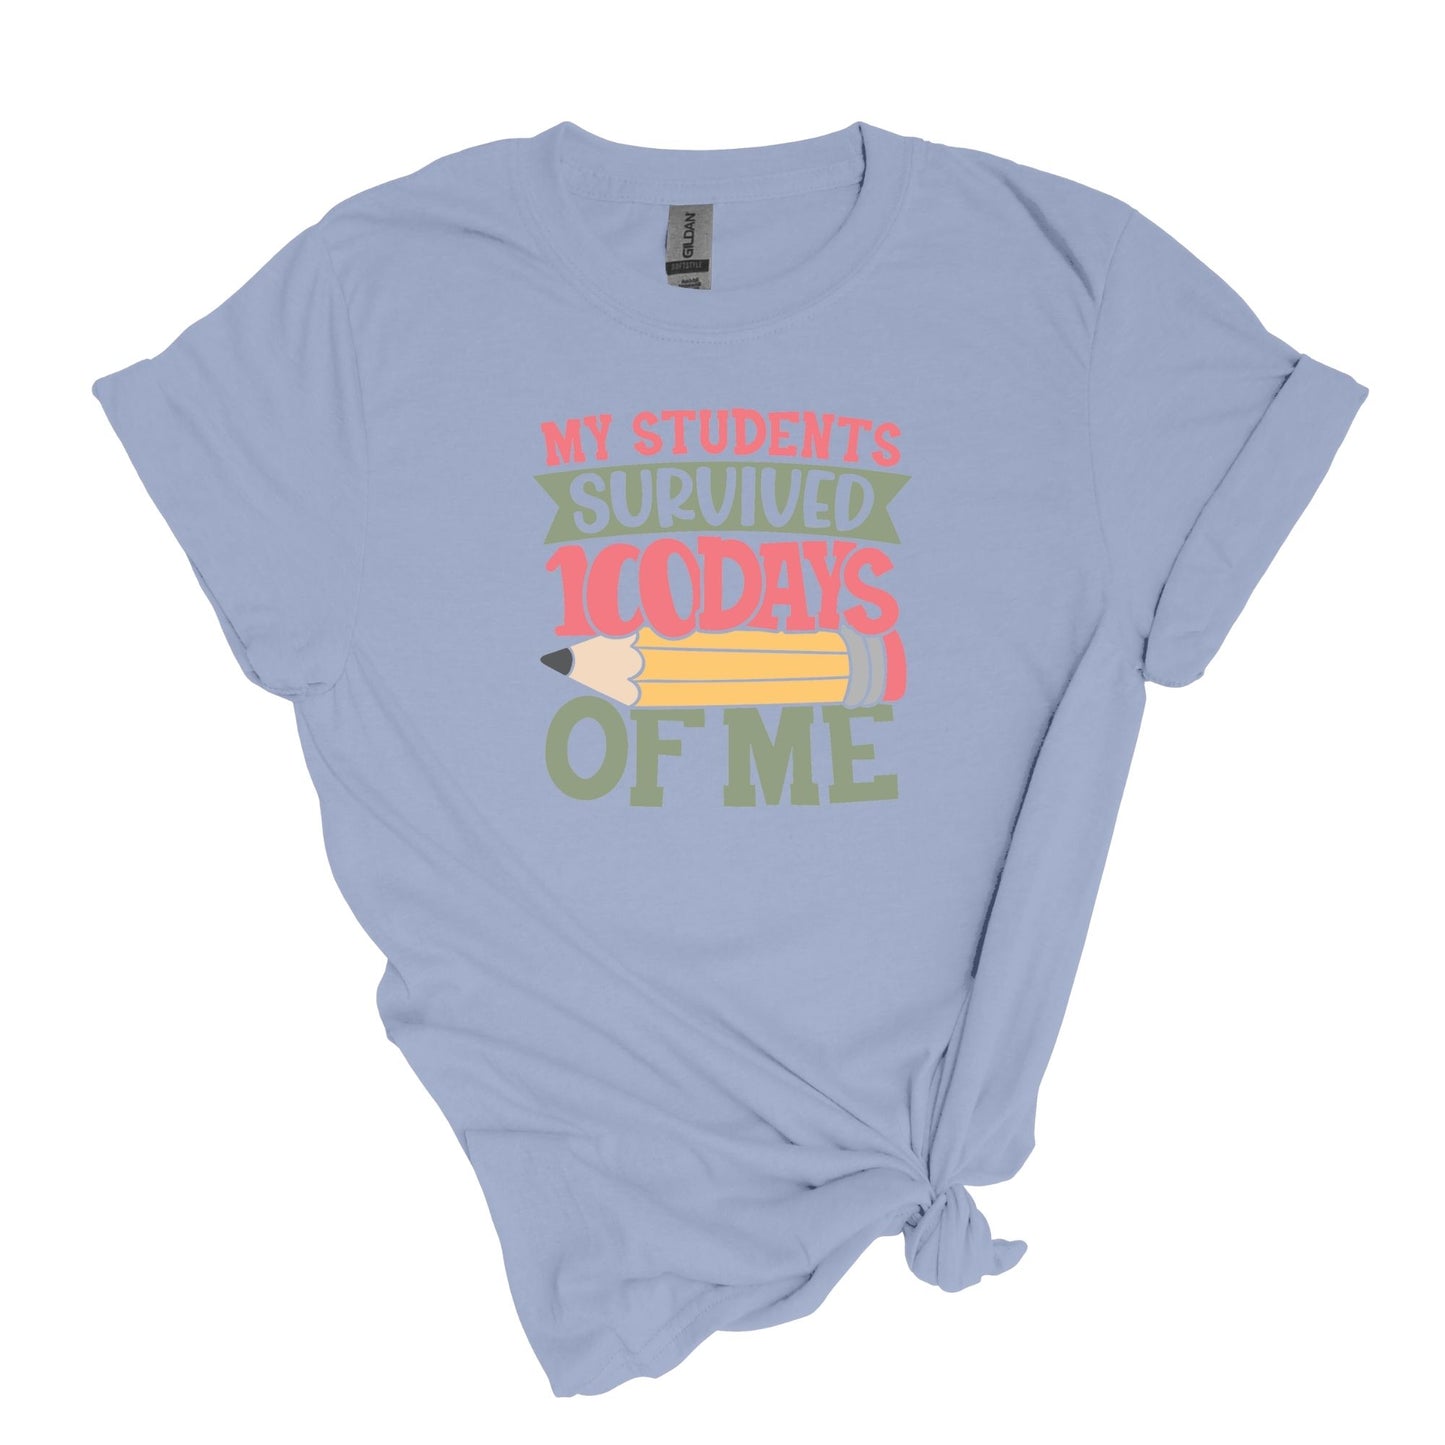 ¡Mis alumnos sobrevivieron 100 días de mí! - Camisa para profesores - Camiseta unisex para adultos de estilo suave 